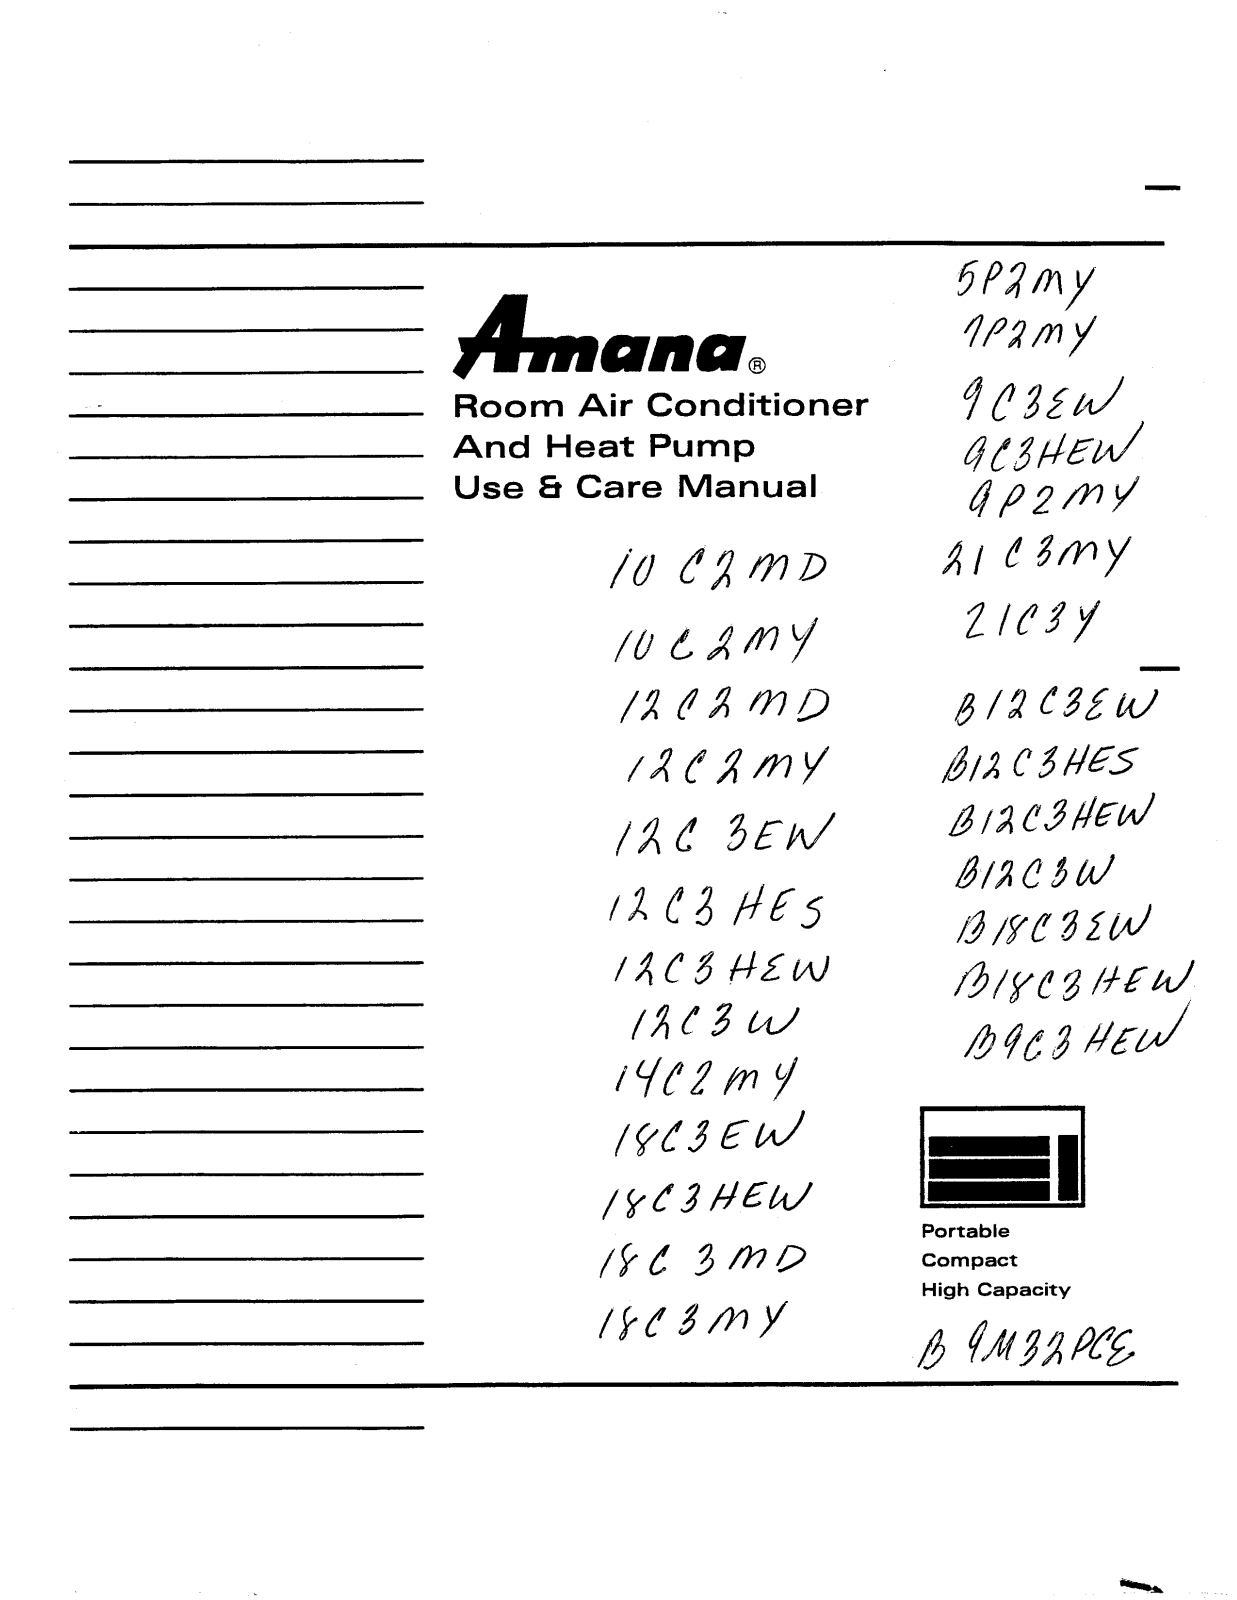 Amana 10C2MD, 10C2MY, 12C2MD, 12C2MY, 12C3W Owner's Manual